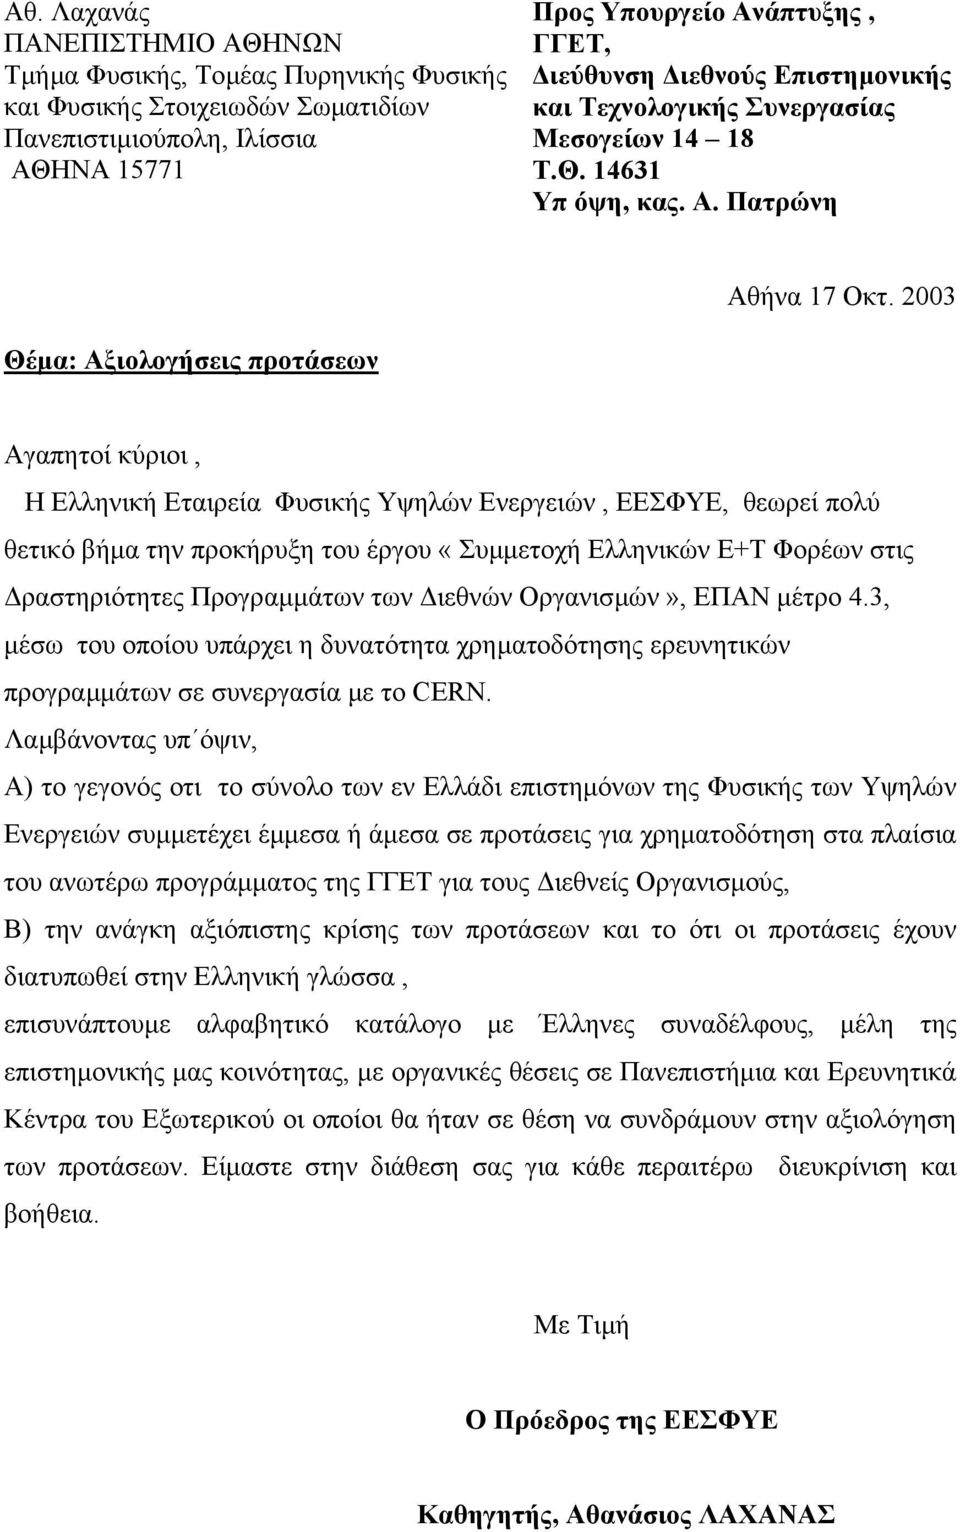 2003 Θέµα: Αξιολογήσεις προτάσεων Αγαπητοί κύριοι, Η Ελληνική Εταιρεία Φυσικής Υψηλών Ενεργειών, ΕΕΣΦΥΕ, θεωρεί πολύ θετικό βήµα την προκήρυξη του έργου «Συµµετοχή Ελληνικών Ε+Τ Φορέων στις